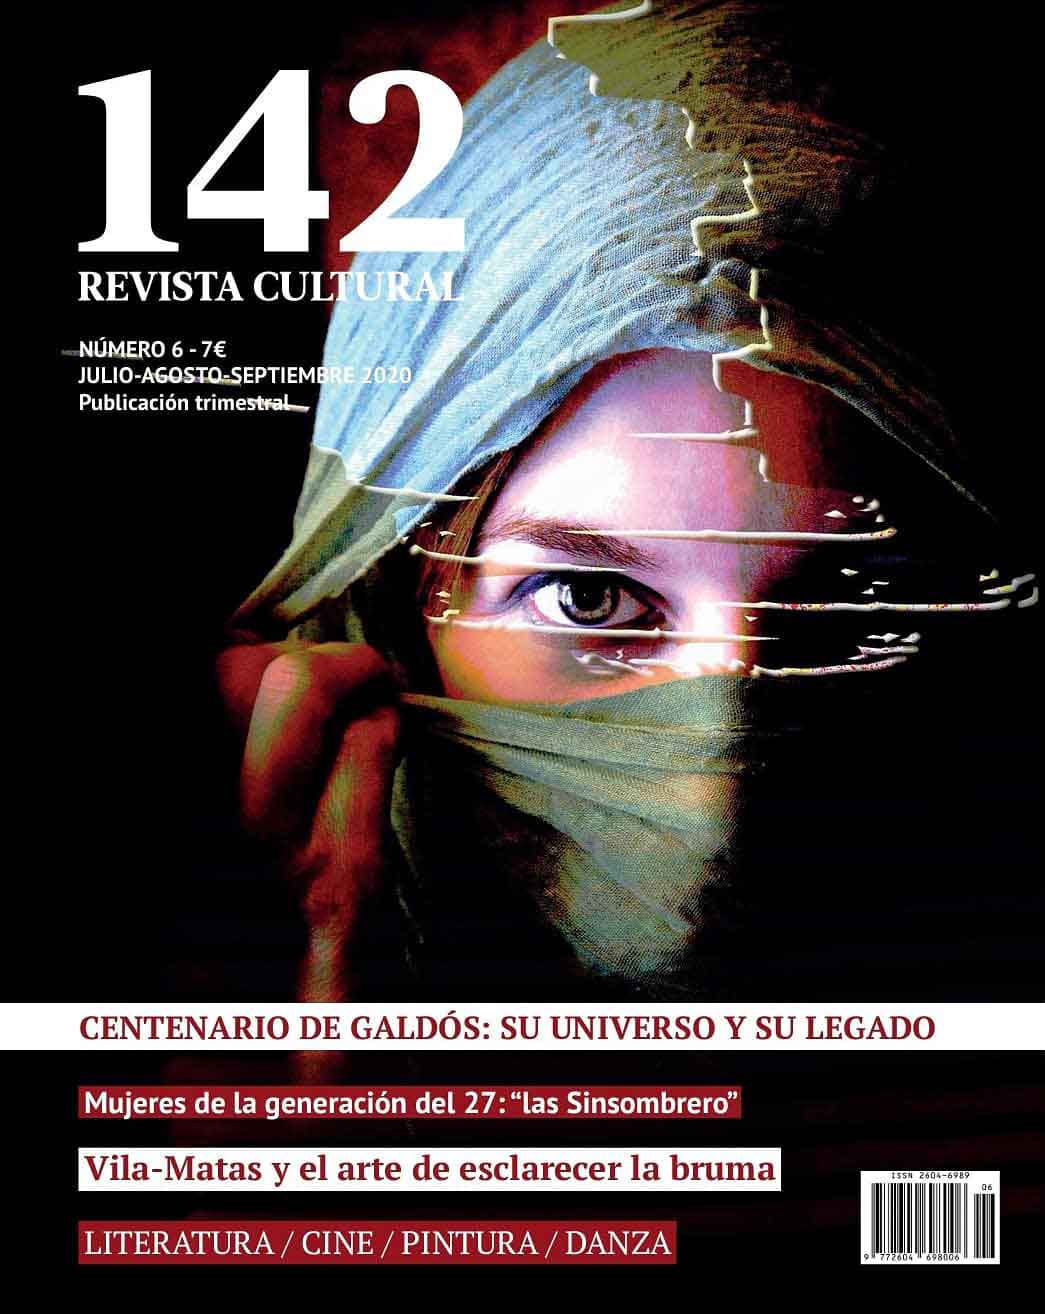 Revista cultural 142